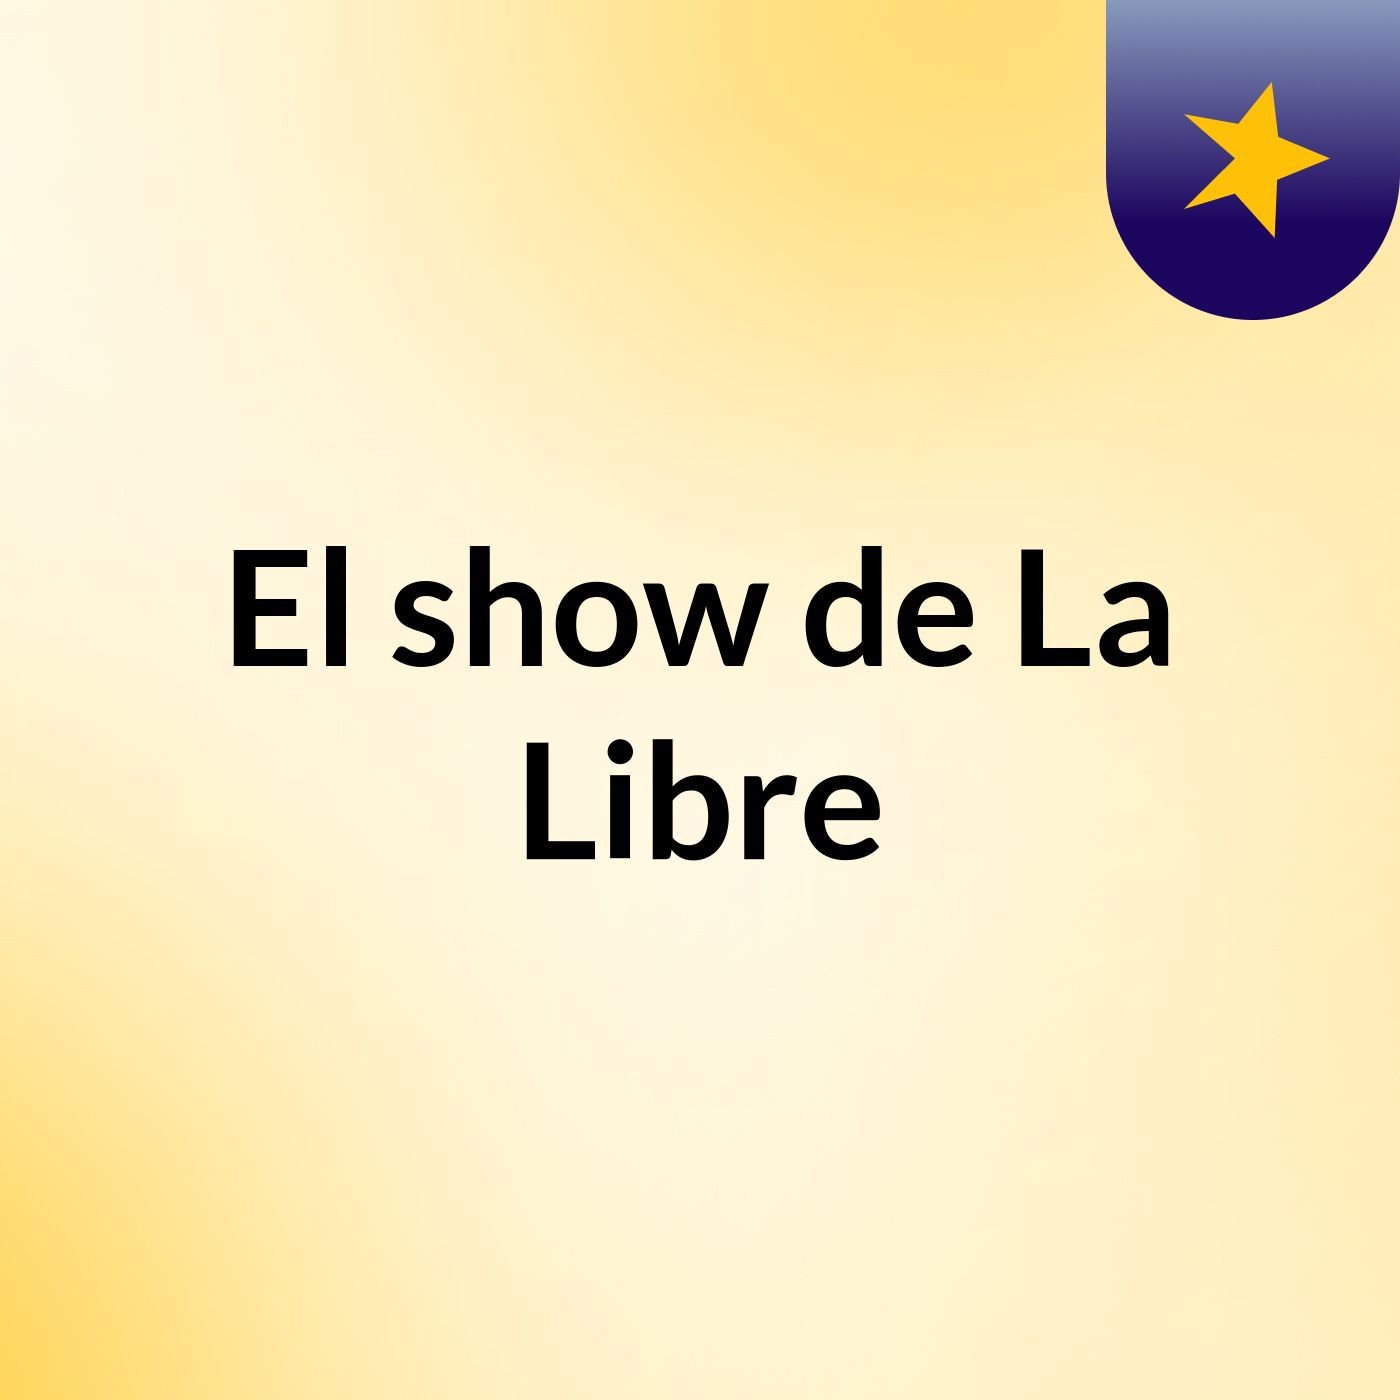 El show de La Libre